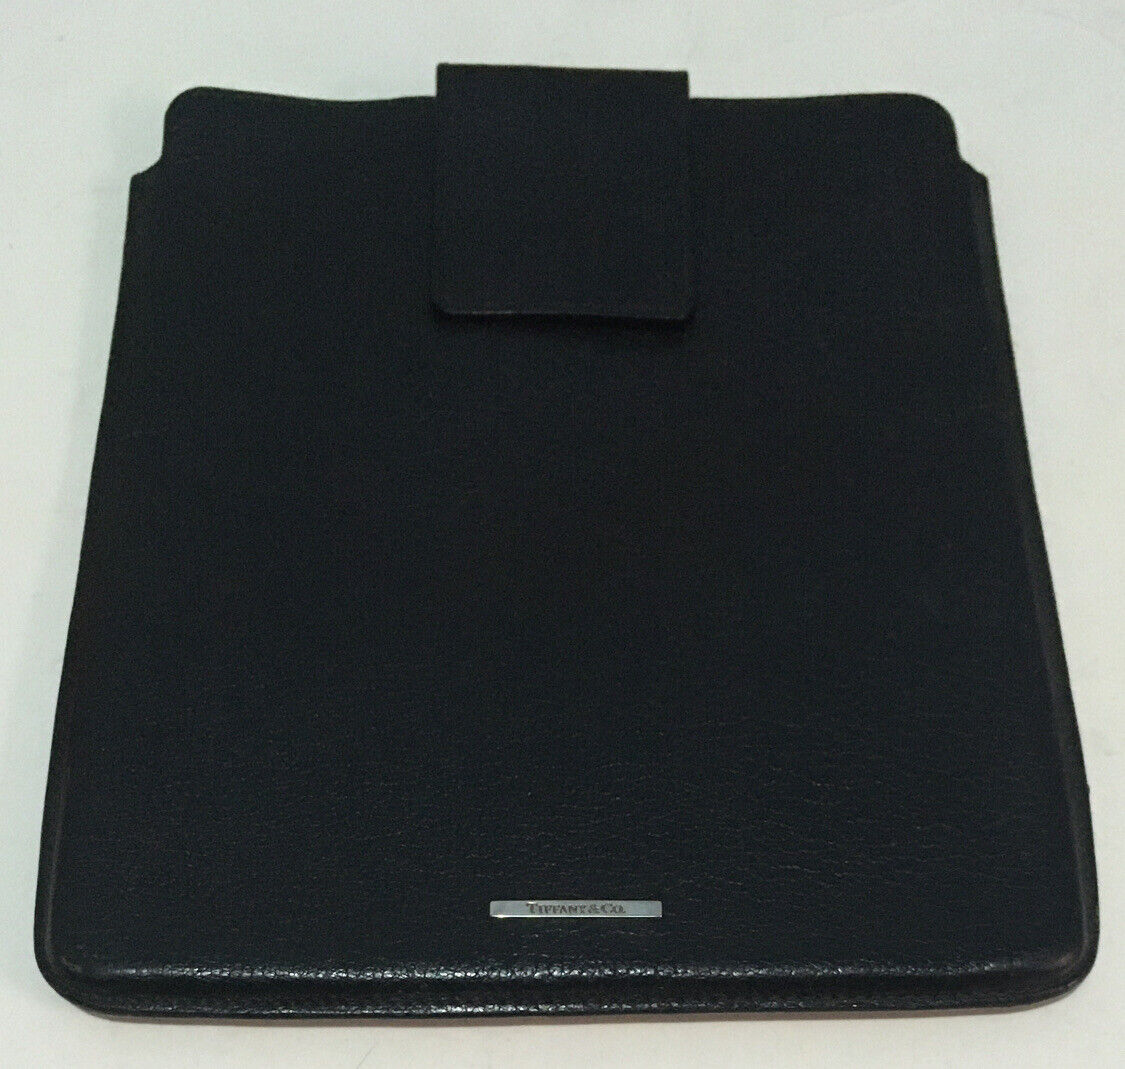 Tiffany & Co iPad case holder